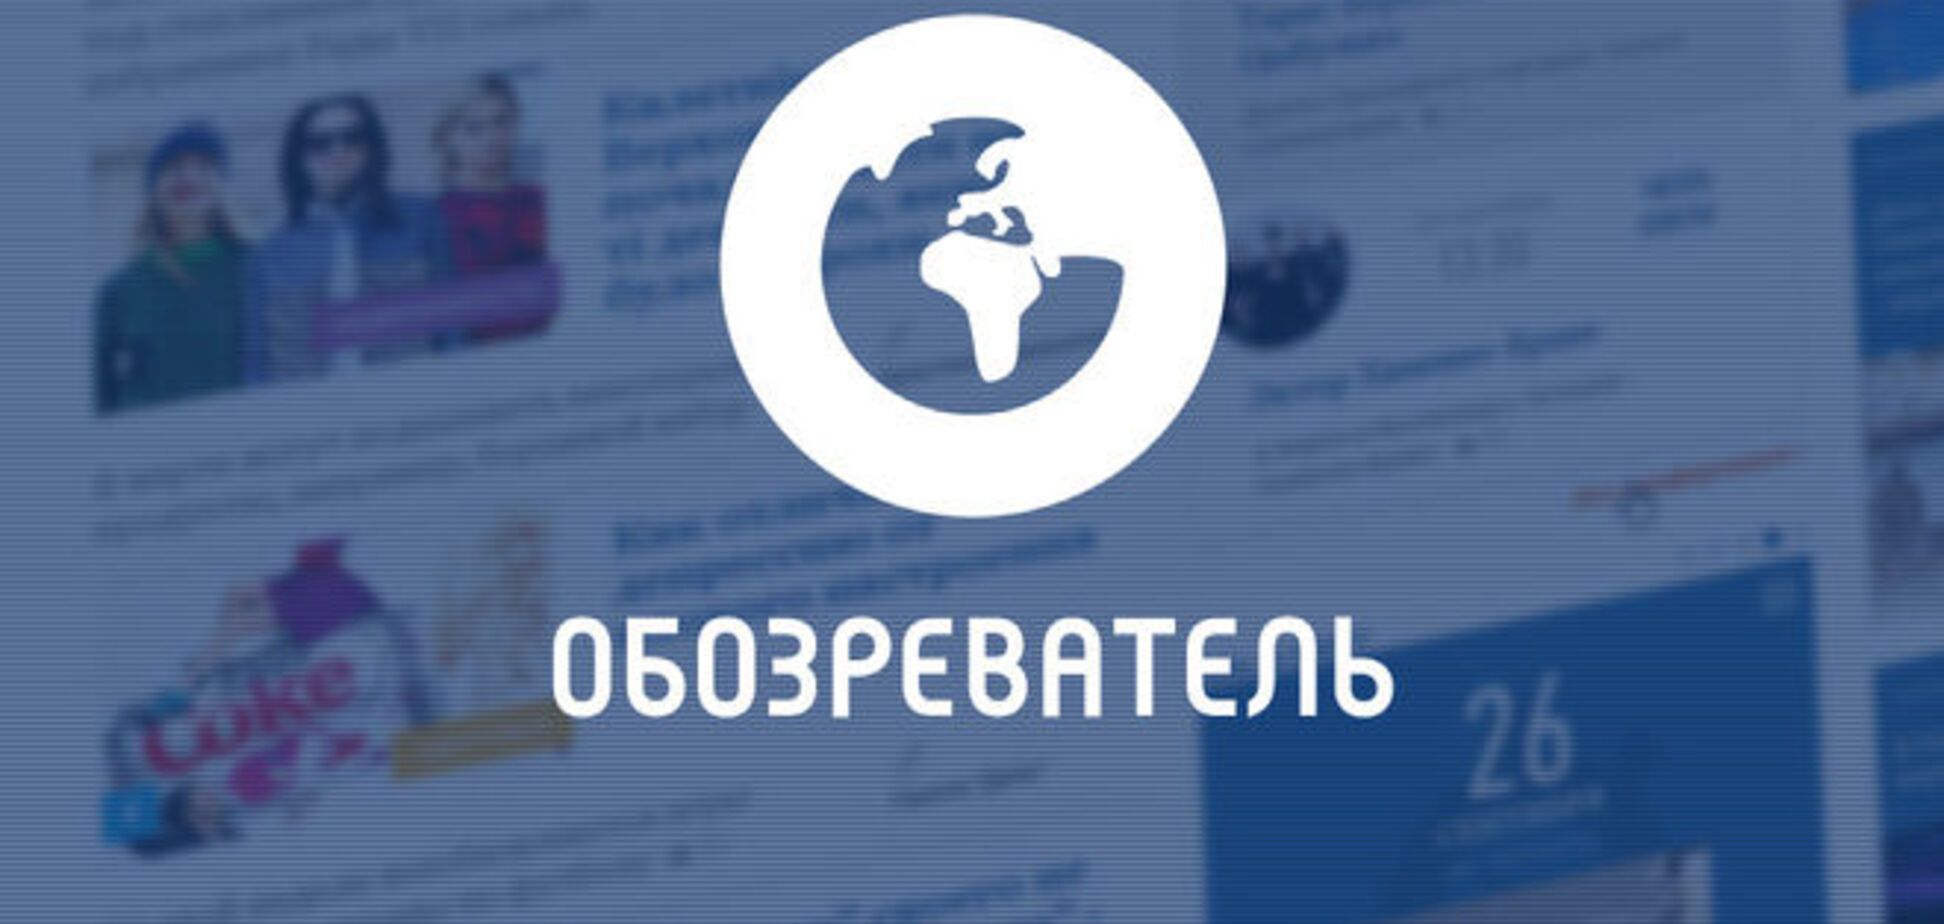 'Обозреватель' стал единственным новостным сайтом в ТОП-20 уанета